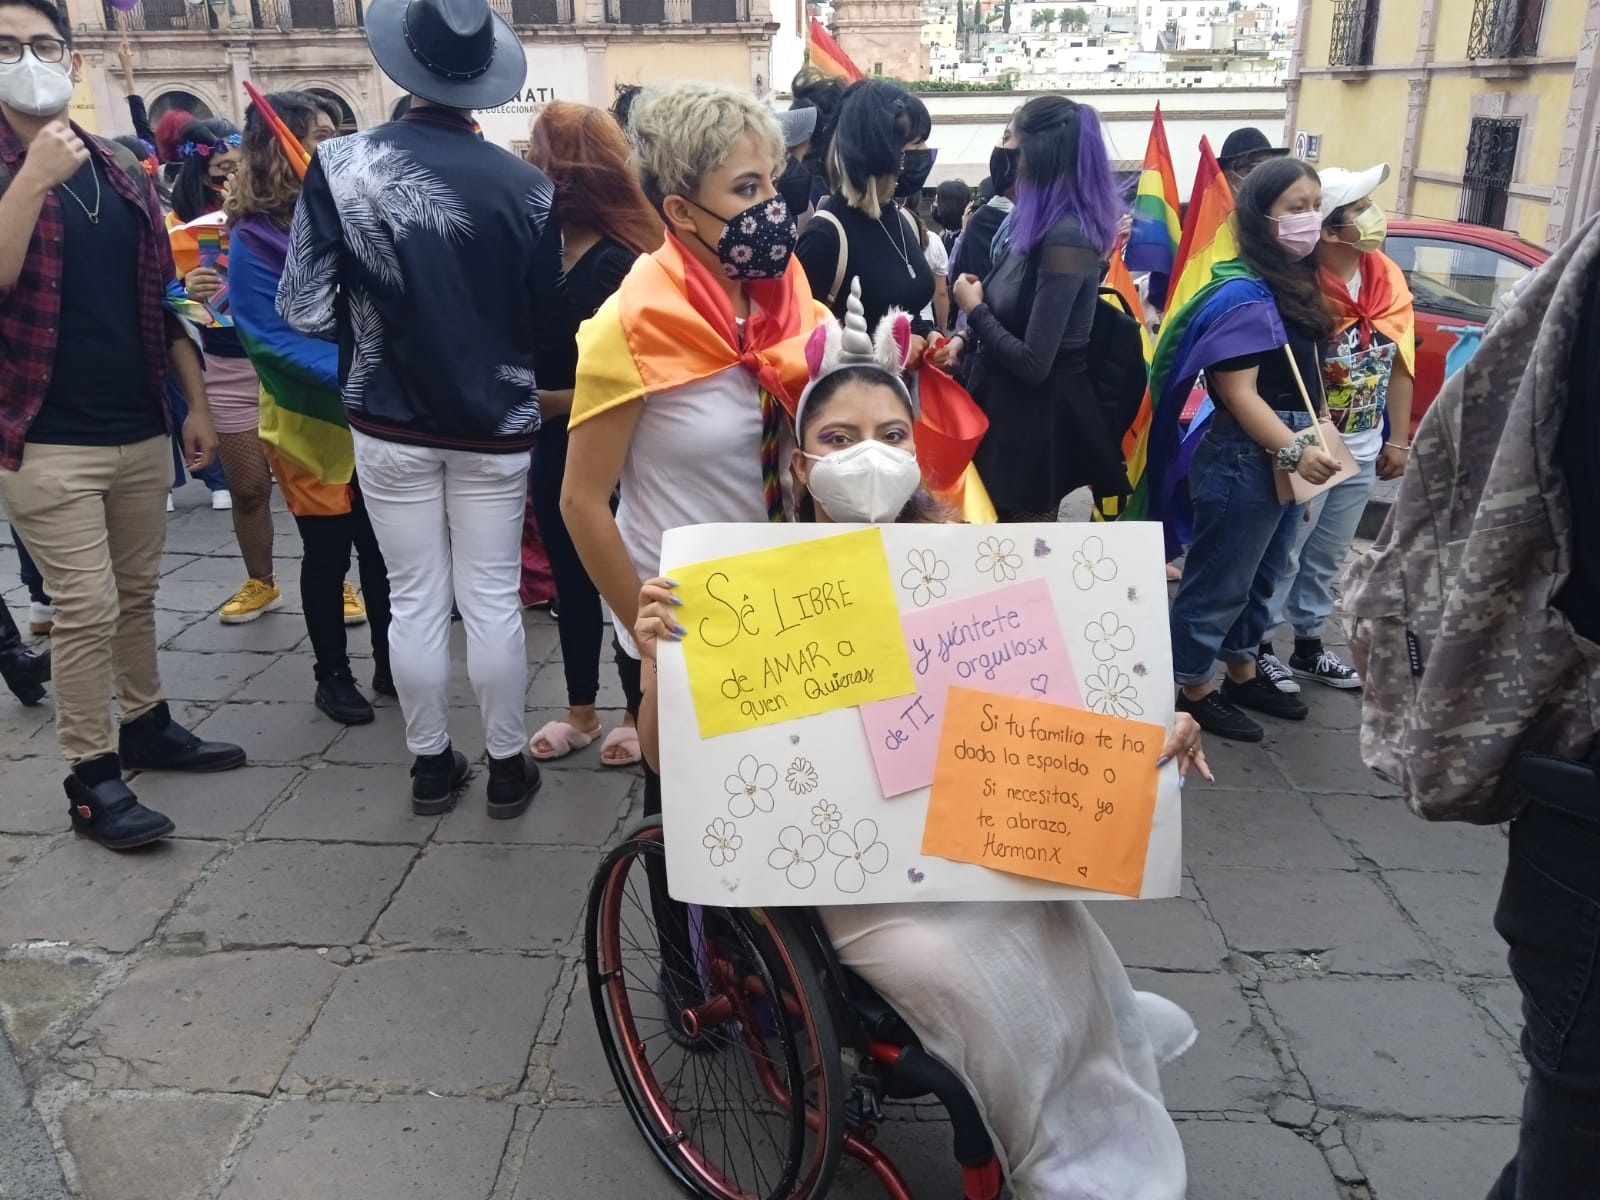 Marcha orgullo gay diversidad sexual Zacatecas